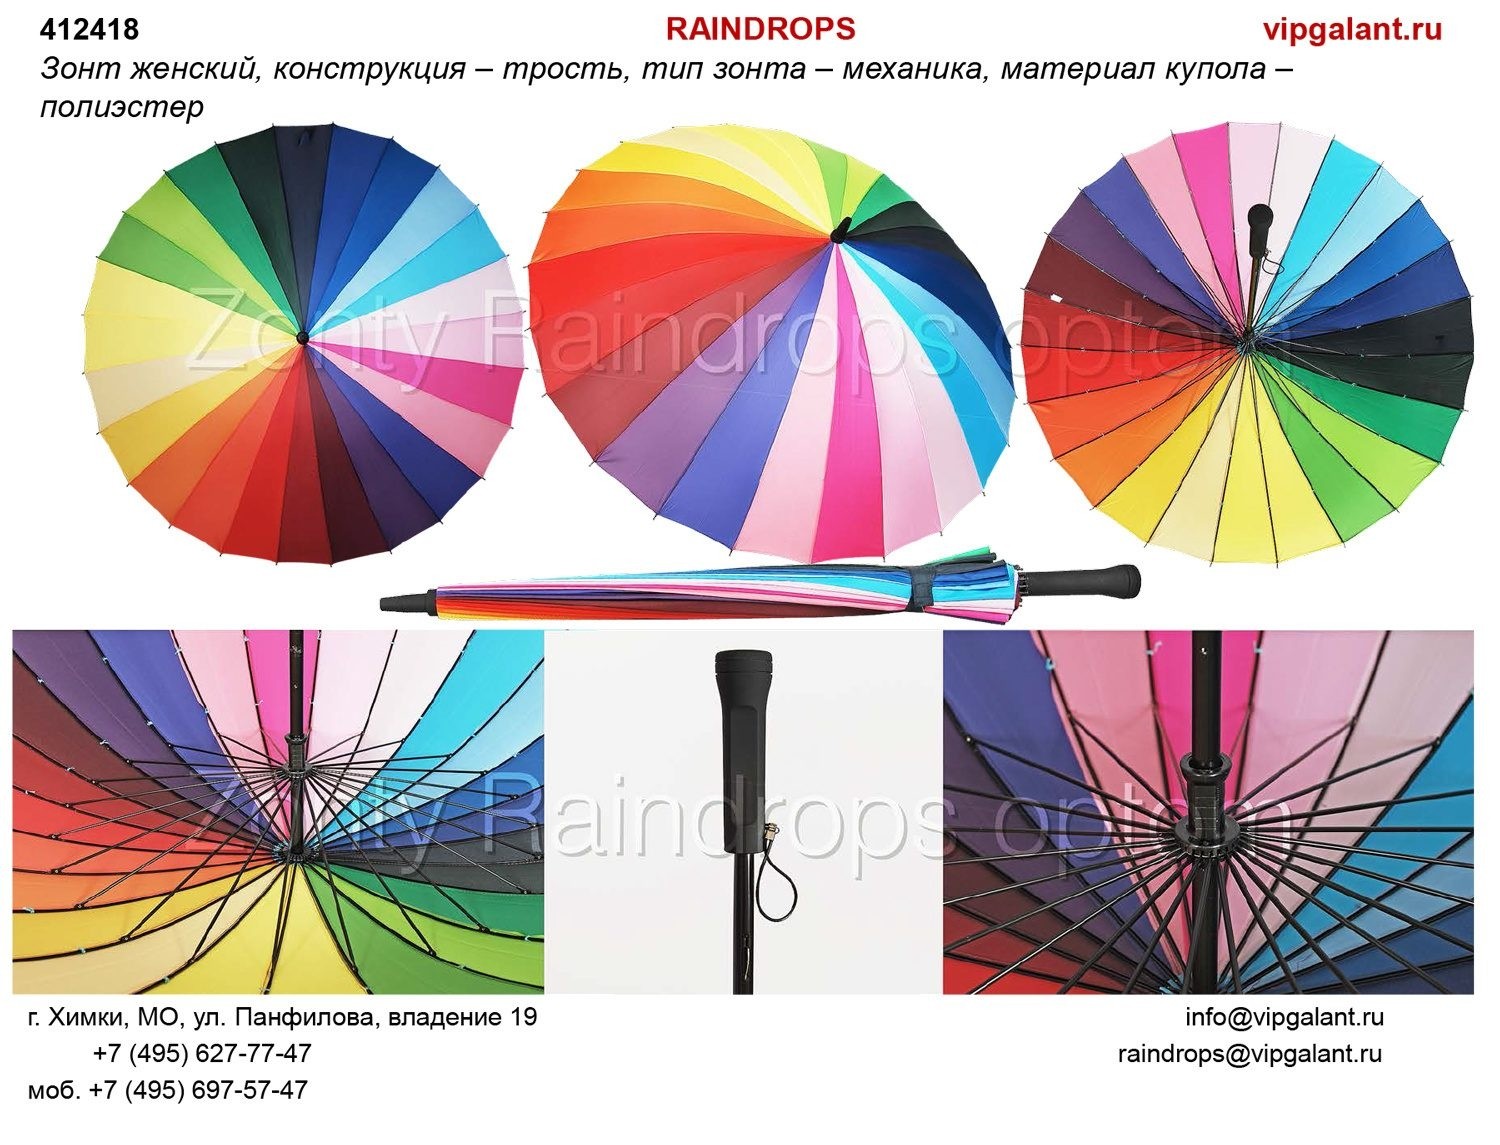 Зонт женский 412418 RAINDROPS трость 24 спицы радуга old 5